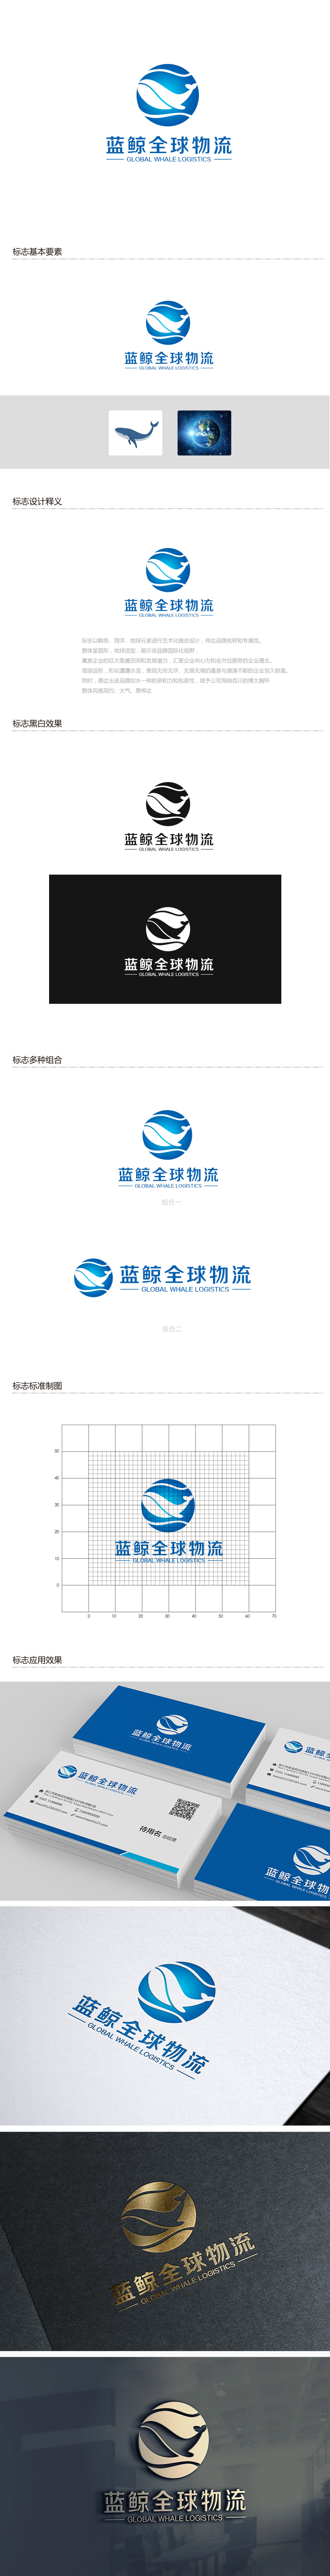 吴晓伟的蓝鲸全球物流（广州）有限公司logo设计